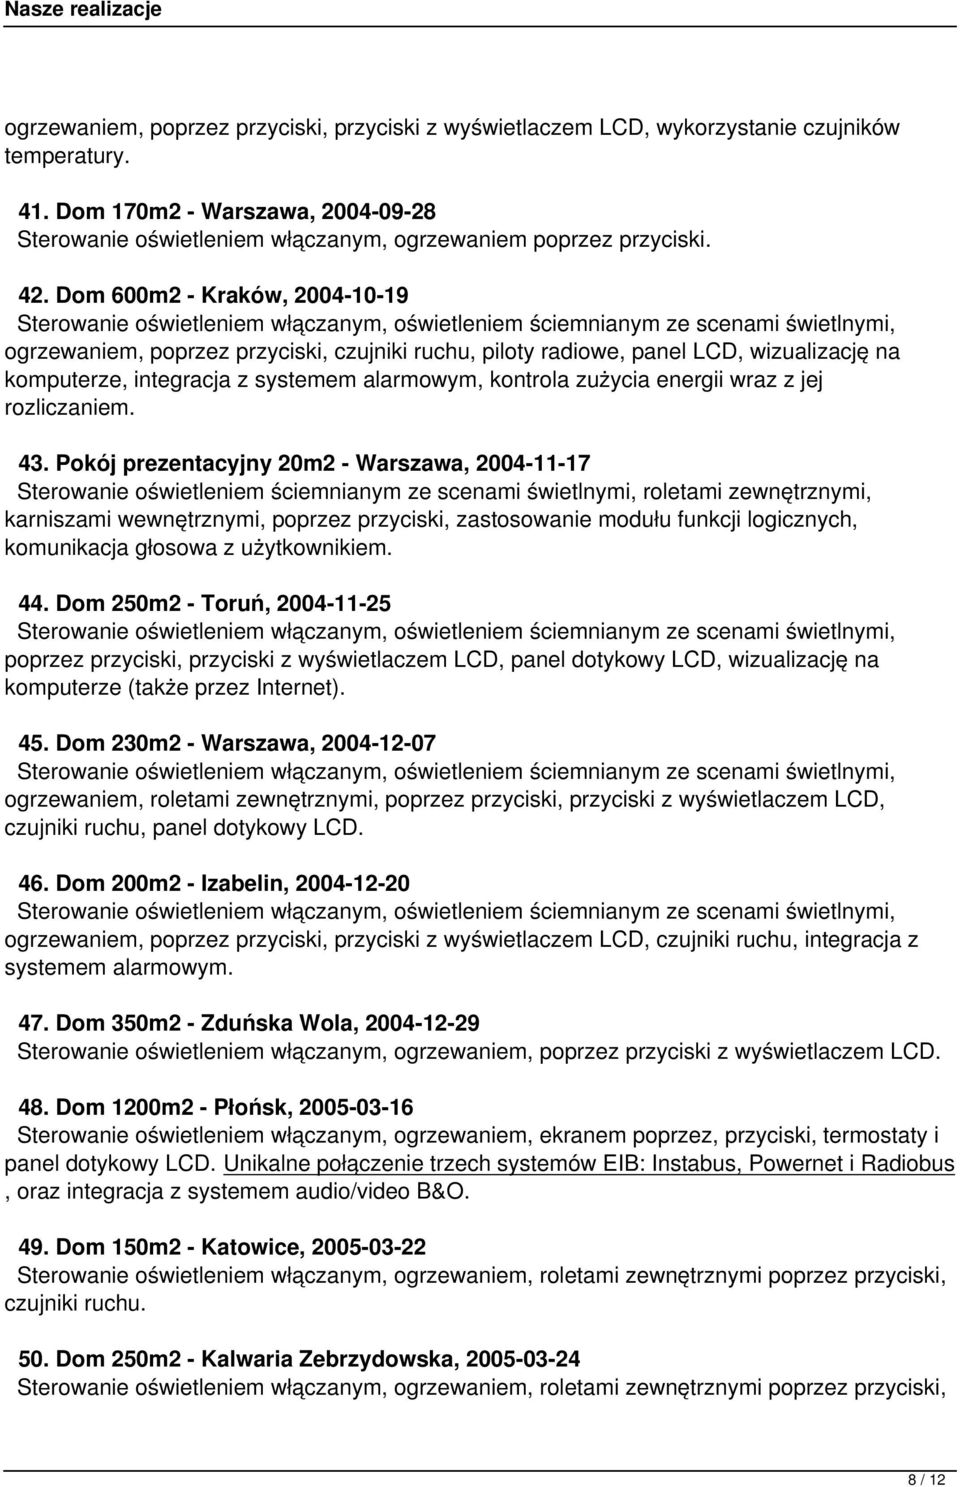 Dom 600m2 - Kraków, 2004-10-19 ogrzewaniem, poprzez przyciski, czujniki ruchu, piloty radiowe, panel LCD, wizualizację na komputerze, integracja z systemem alarmowym, kontrola zużycia energii wraz z